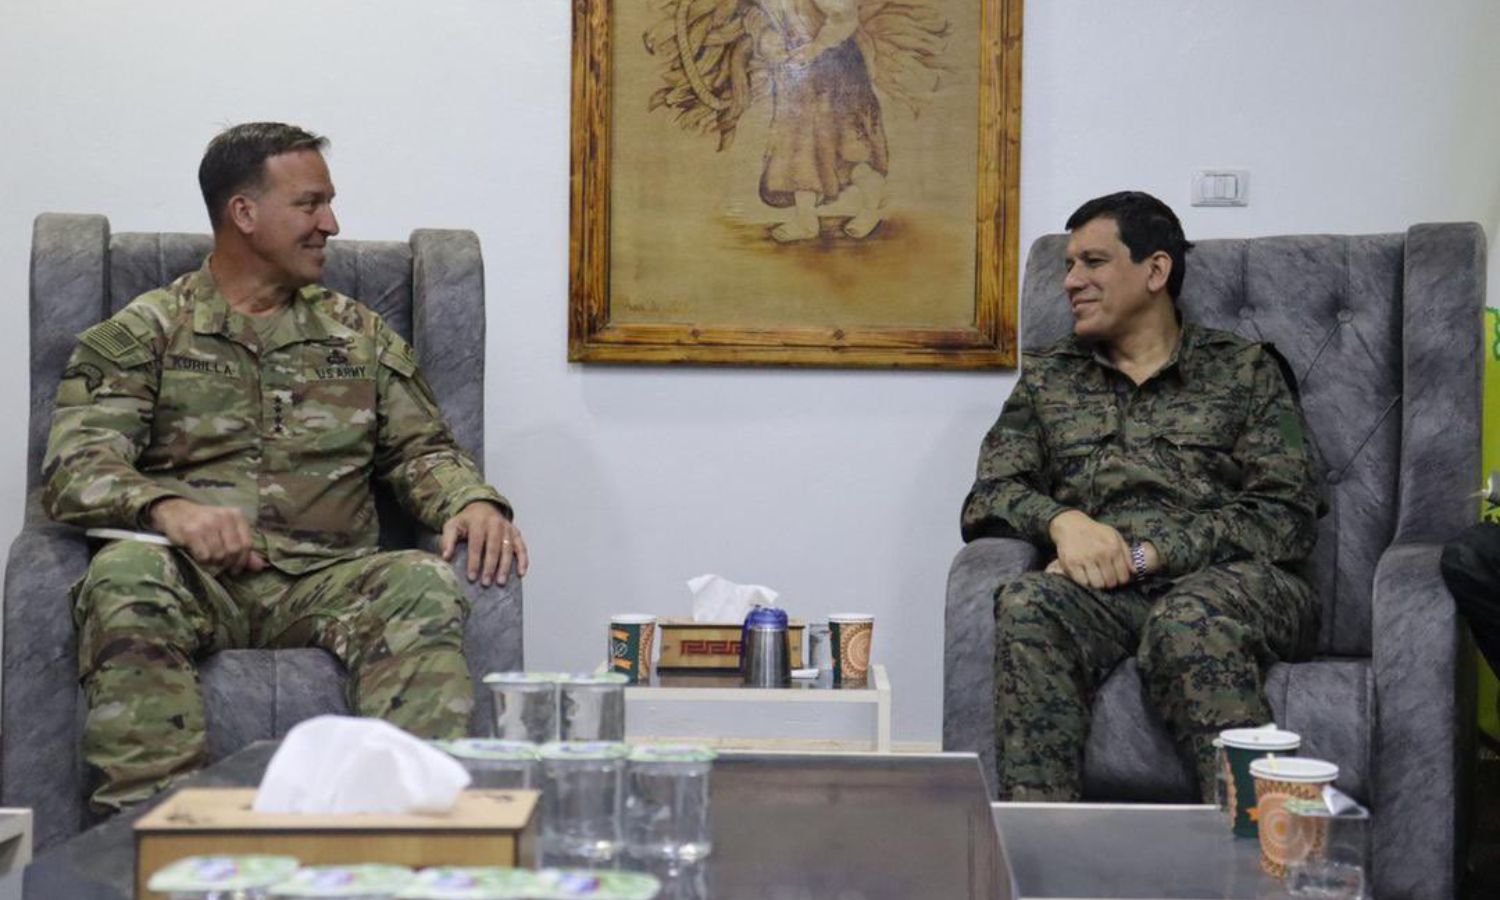 قائد "قسد" مظلوم عبدي (يمين) خلال اجتماعه مع قائد القيادة المركزية الأمريكية الجنرال مايكل إيريك كوريلا (يسار)- 14 من نيسان 2022 (مظلوم عبدي/ إكس)